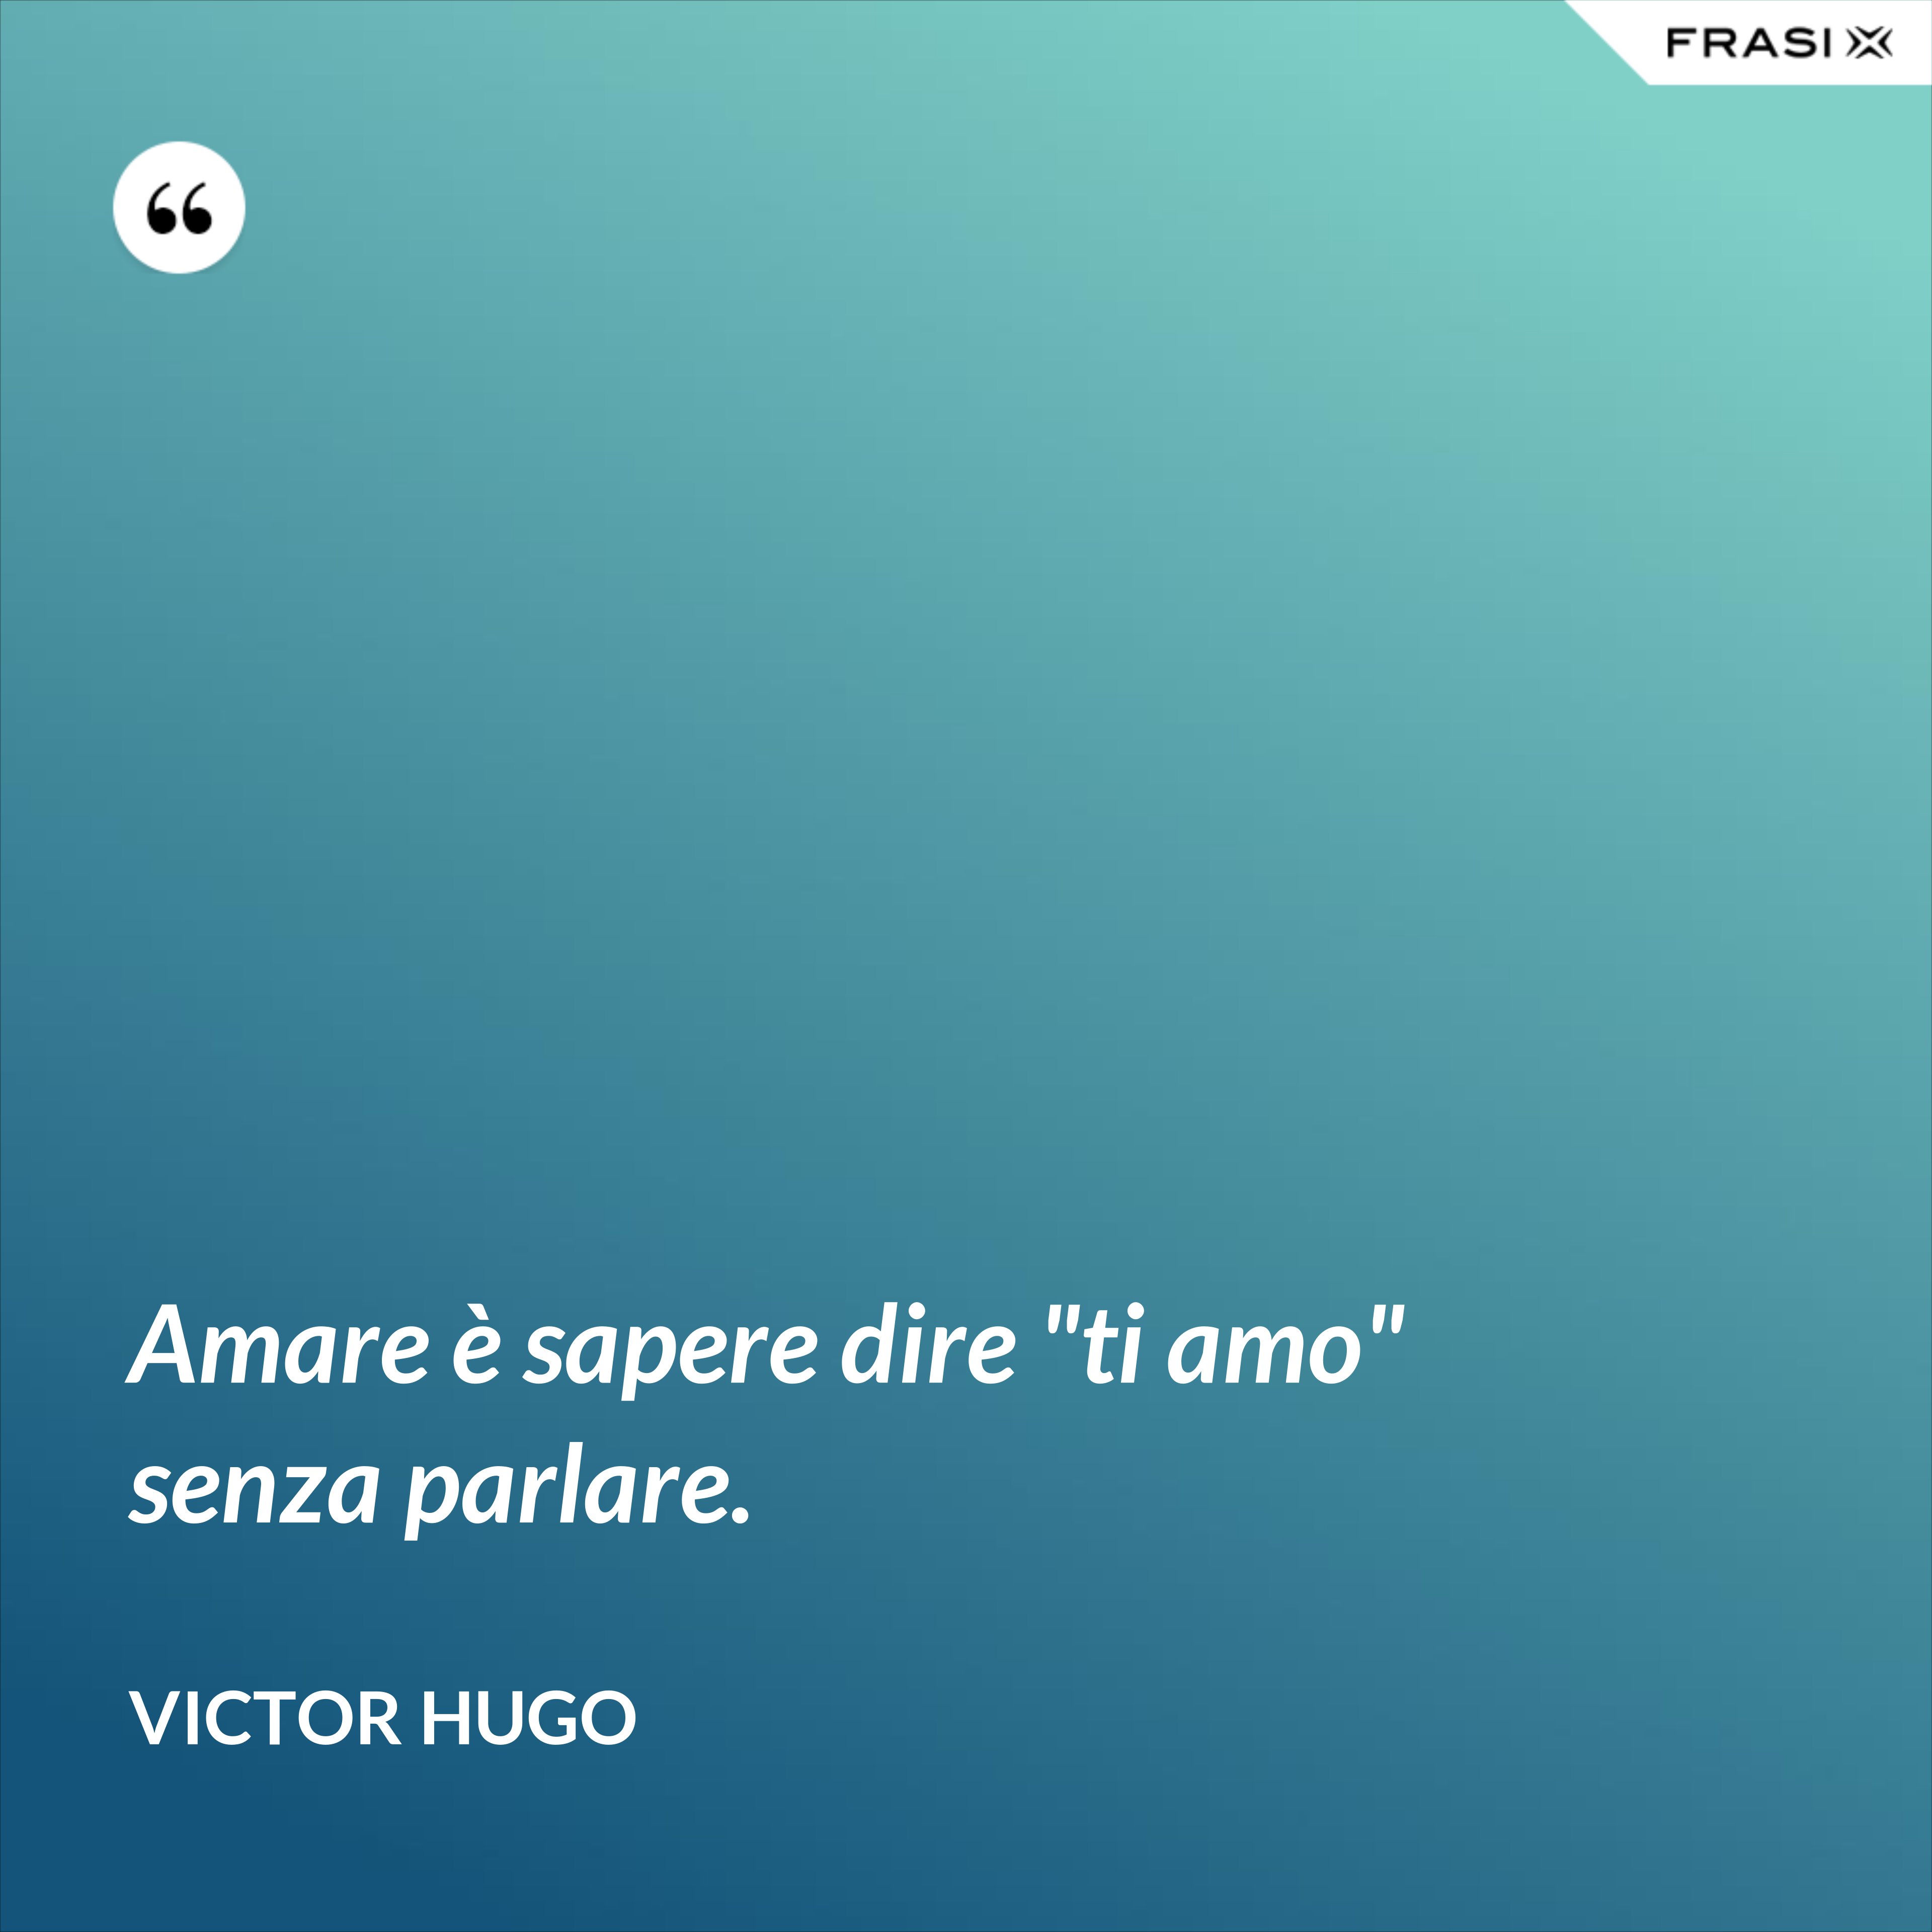 Amare è sapere dire "ti amo" senza parlare. - Victor Hugo